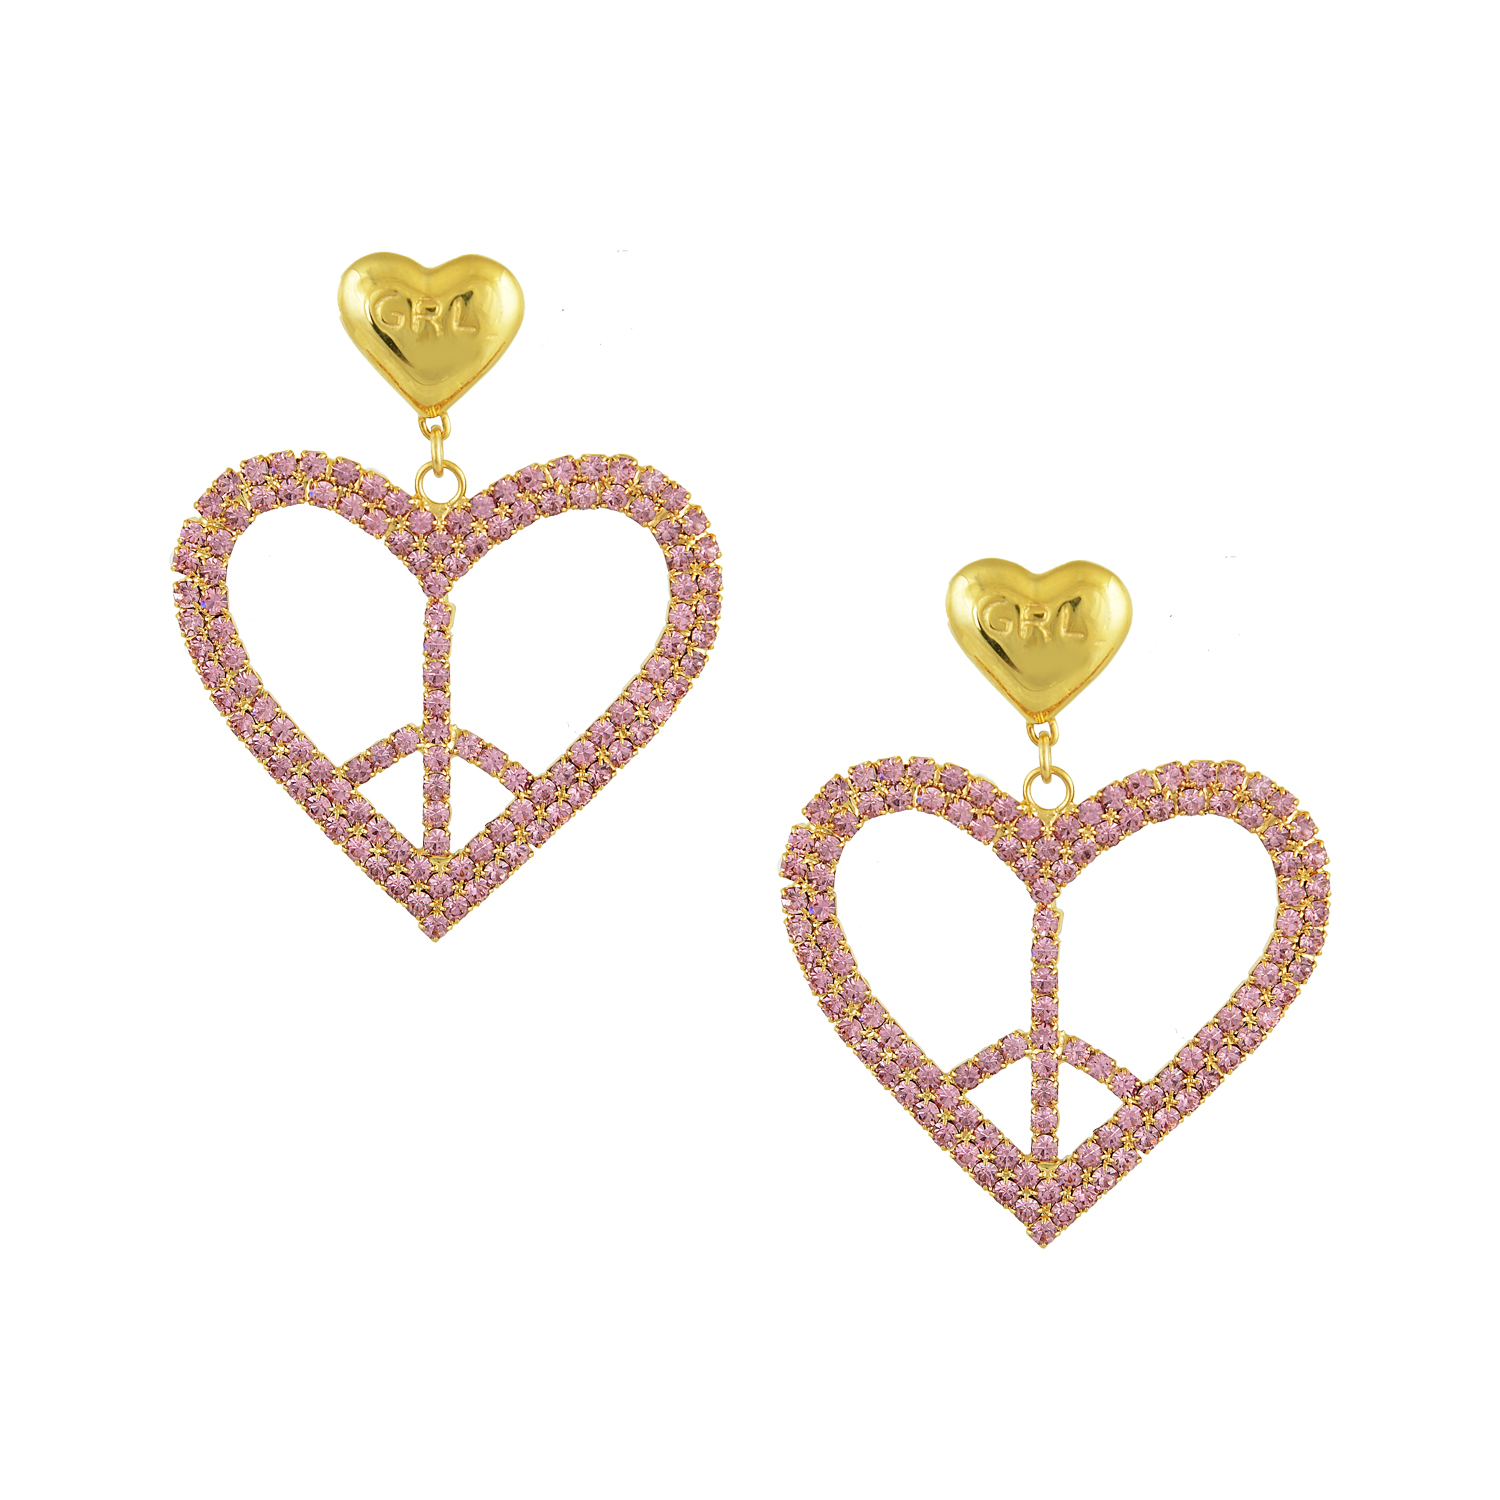 Heathers Earrings - Mayol Jewelry